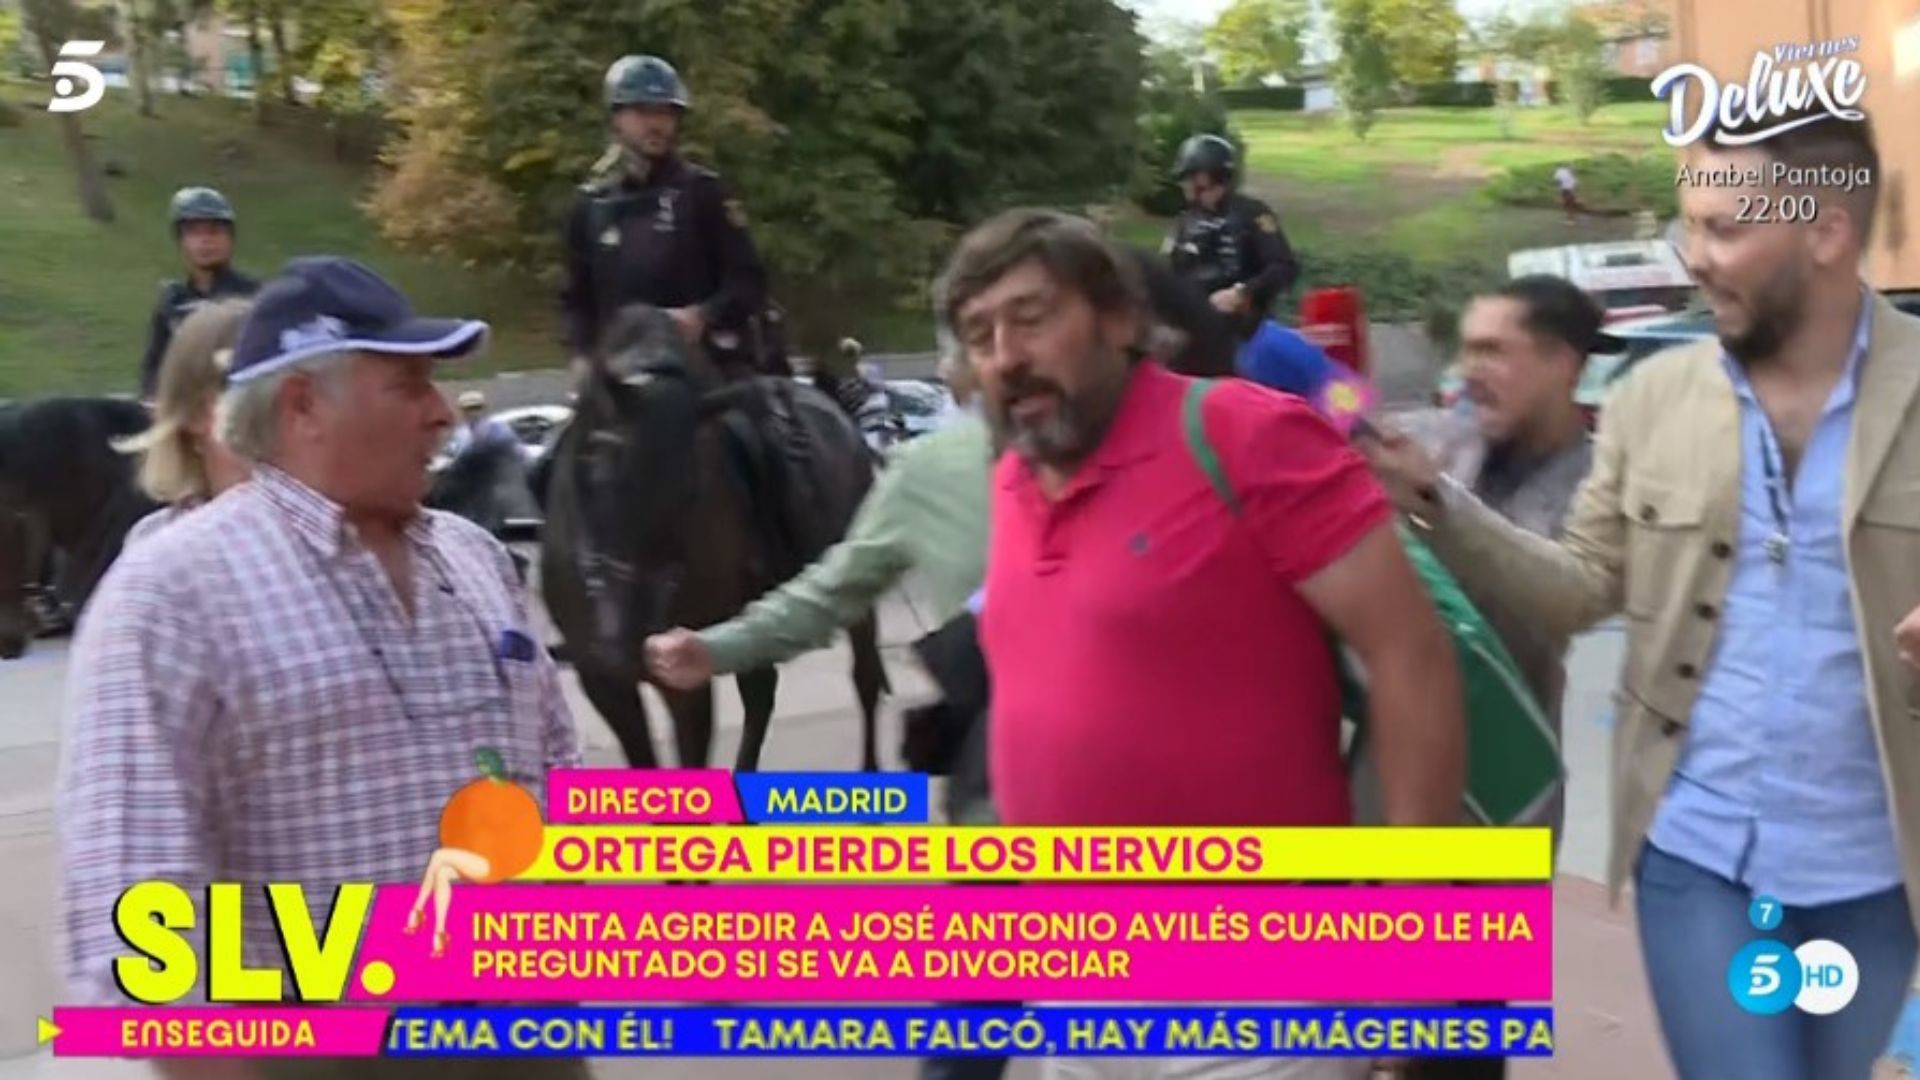 Ortega Cano pierde los nervios: amaga con agredir a un reportero